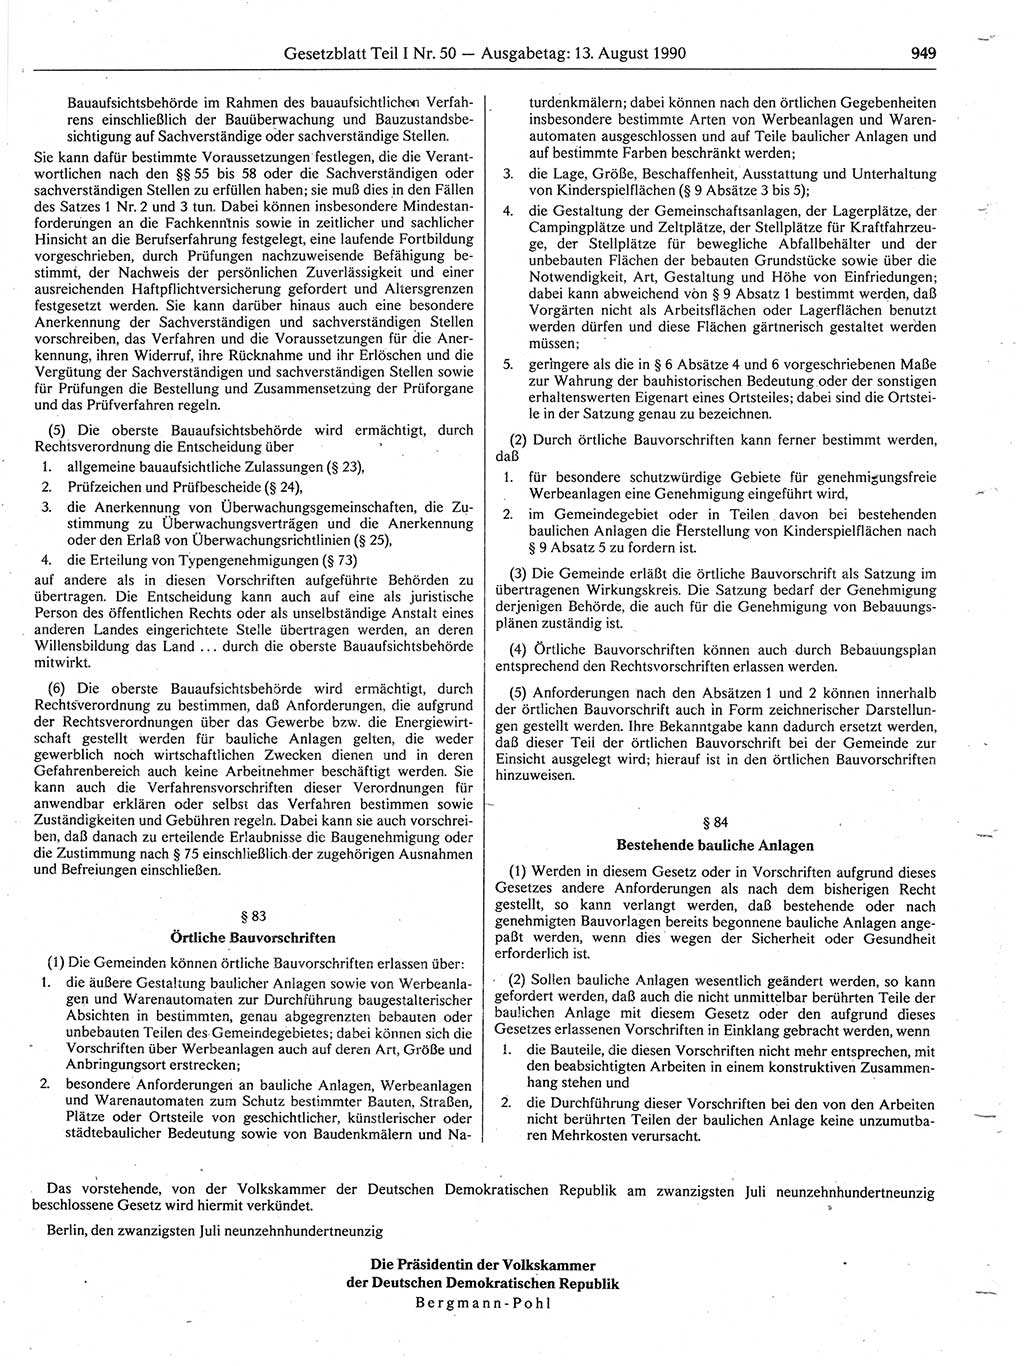 Gesetzblatt (GBl.) der Deutschen Demokratischen Republik (DDR) Teil Ⅰ 1990, Seite 949 (GBl. DDR Ⅰ 1990, S. 949)